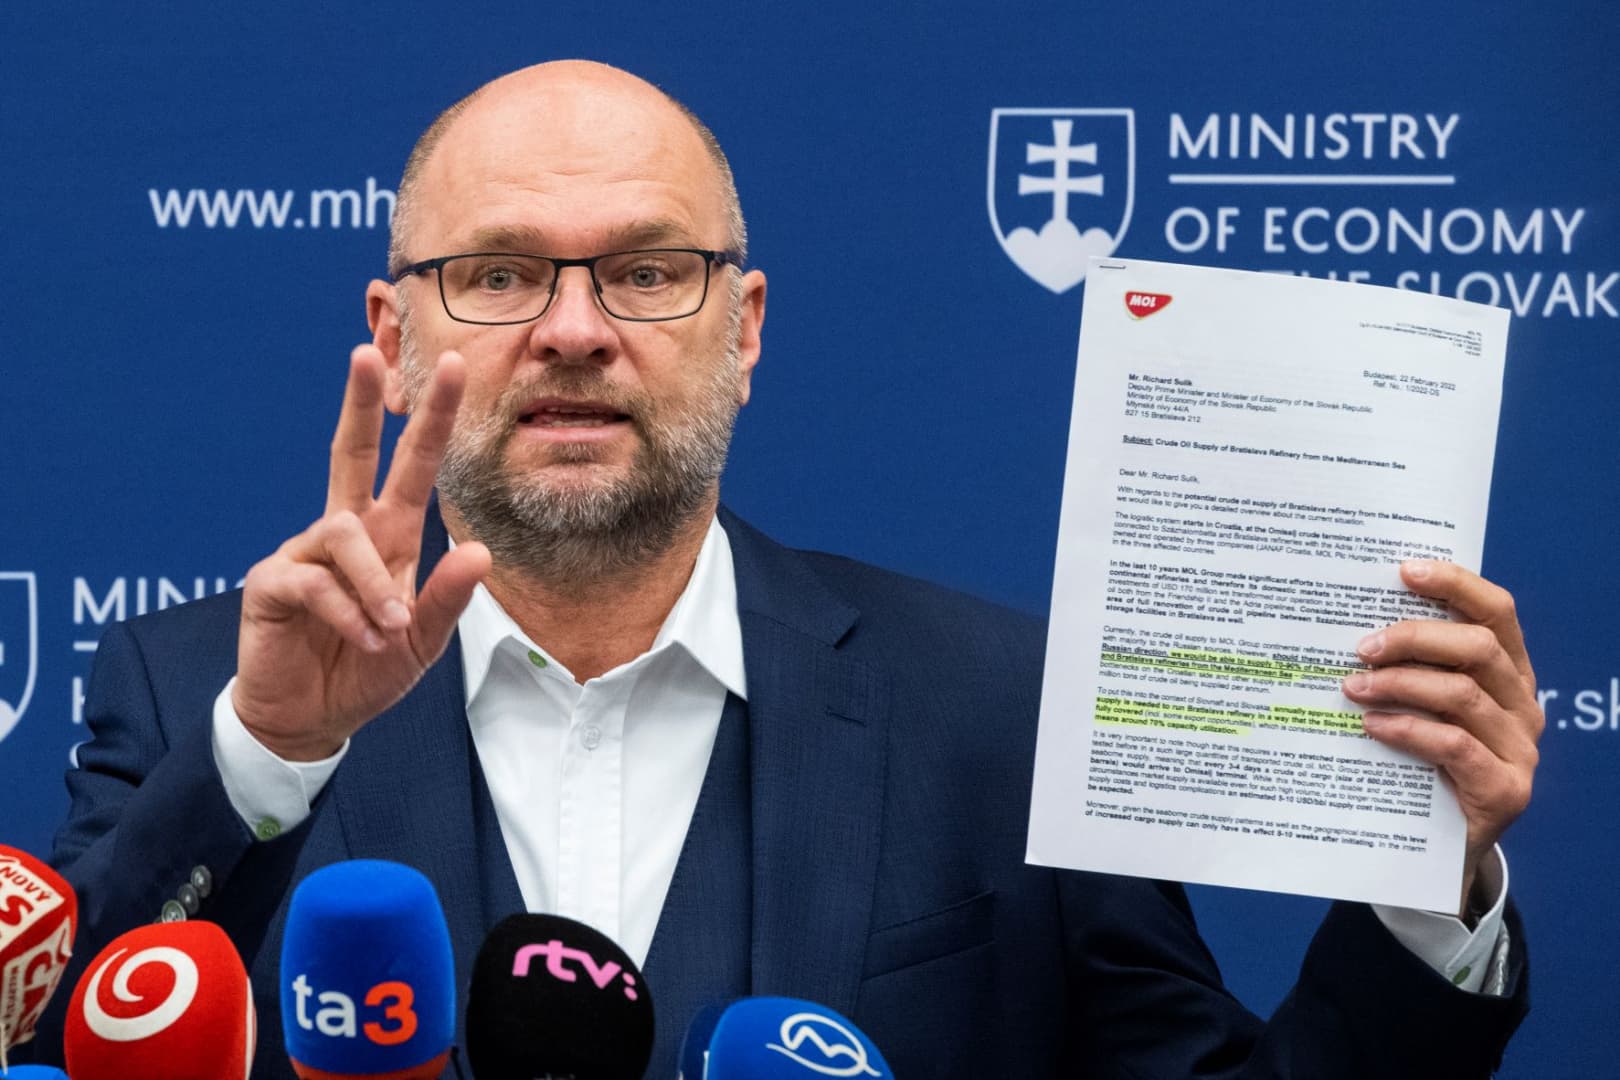 Sulík: Heger helyesen döntött, a döntését támogatom és tiszteletben tartom - Szlovákia "gázolajoázis" lehet